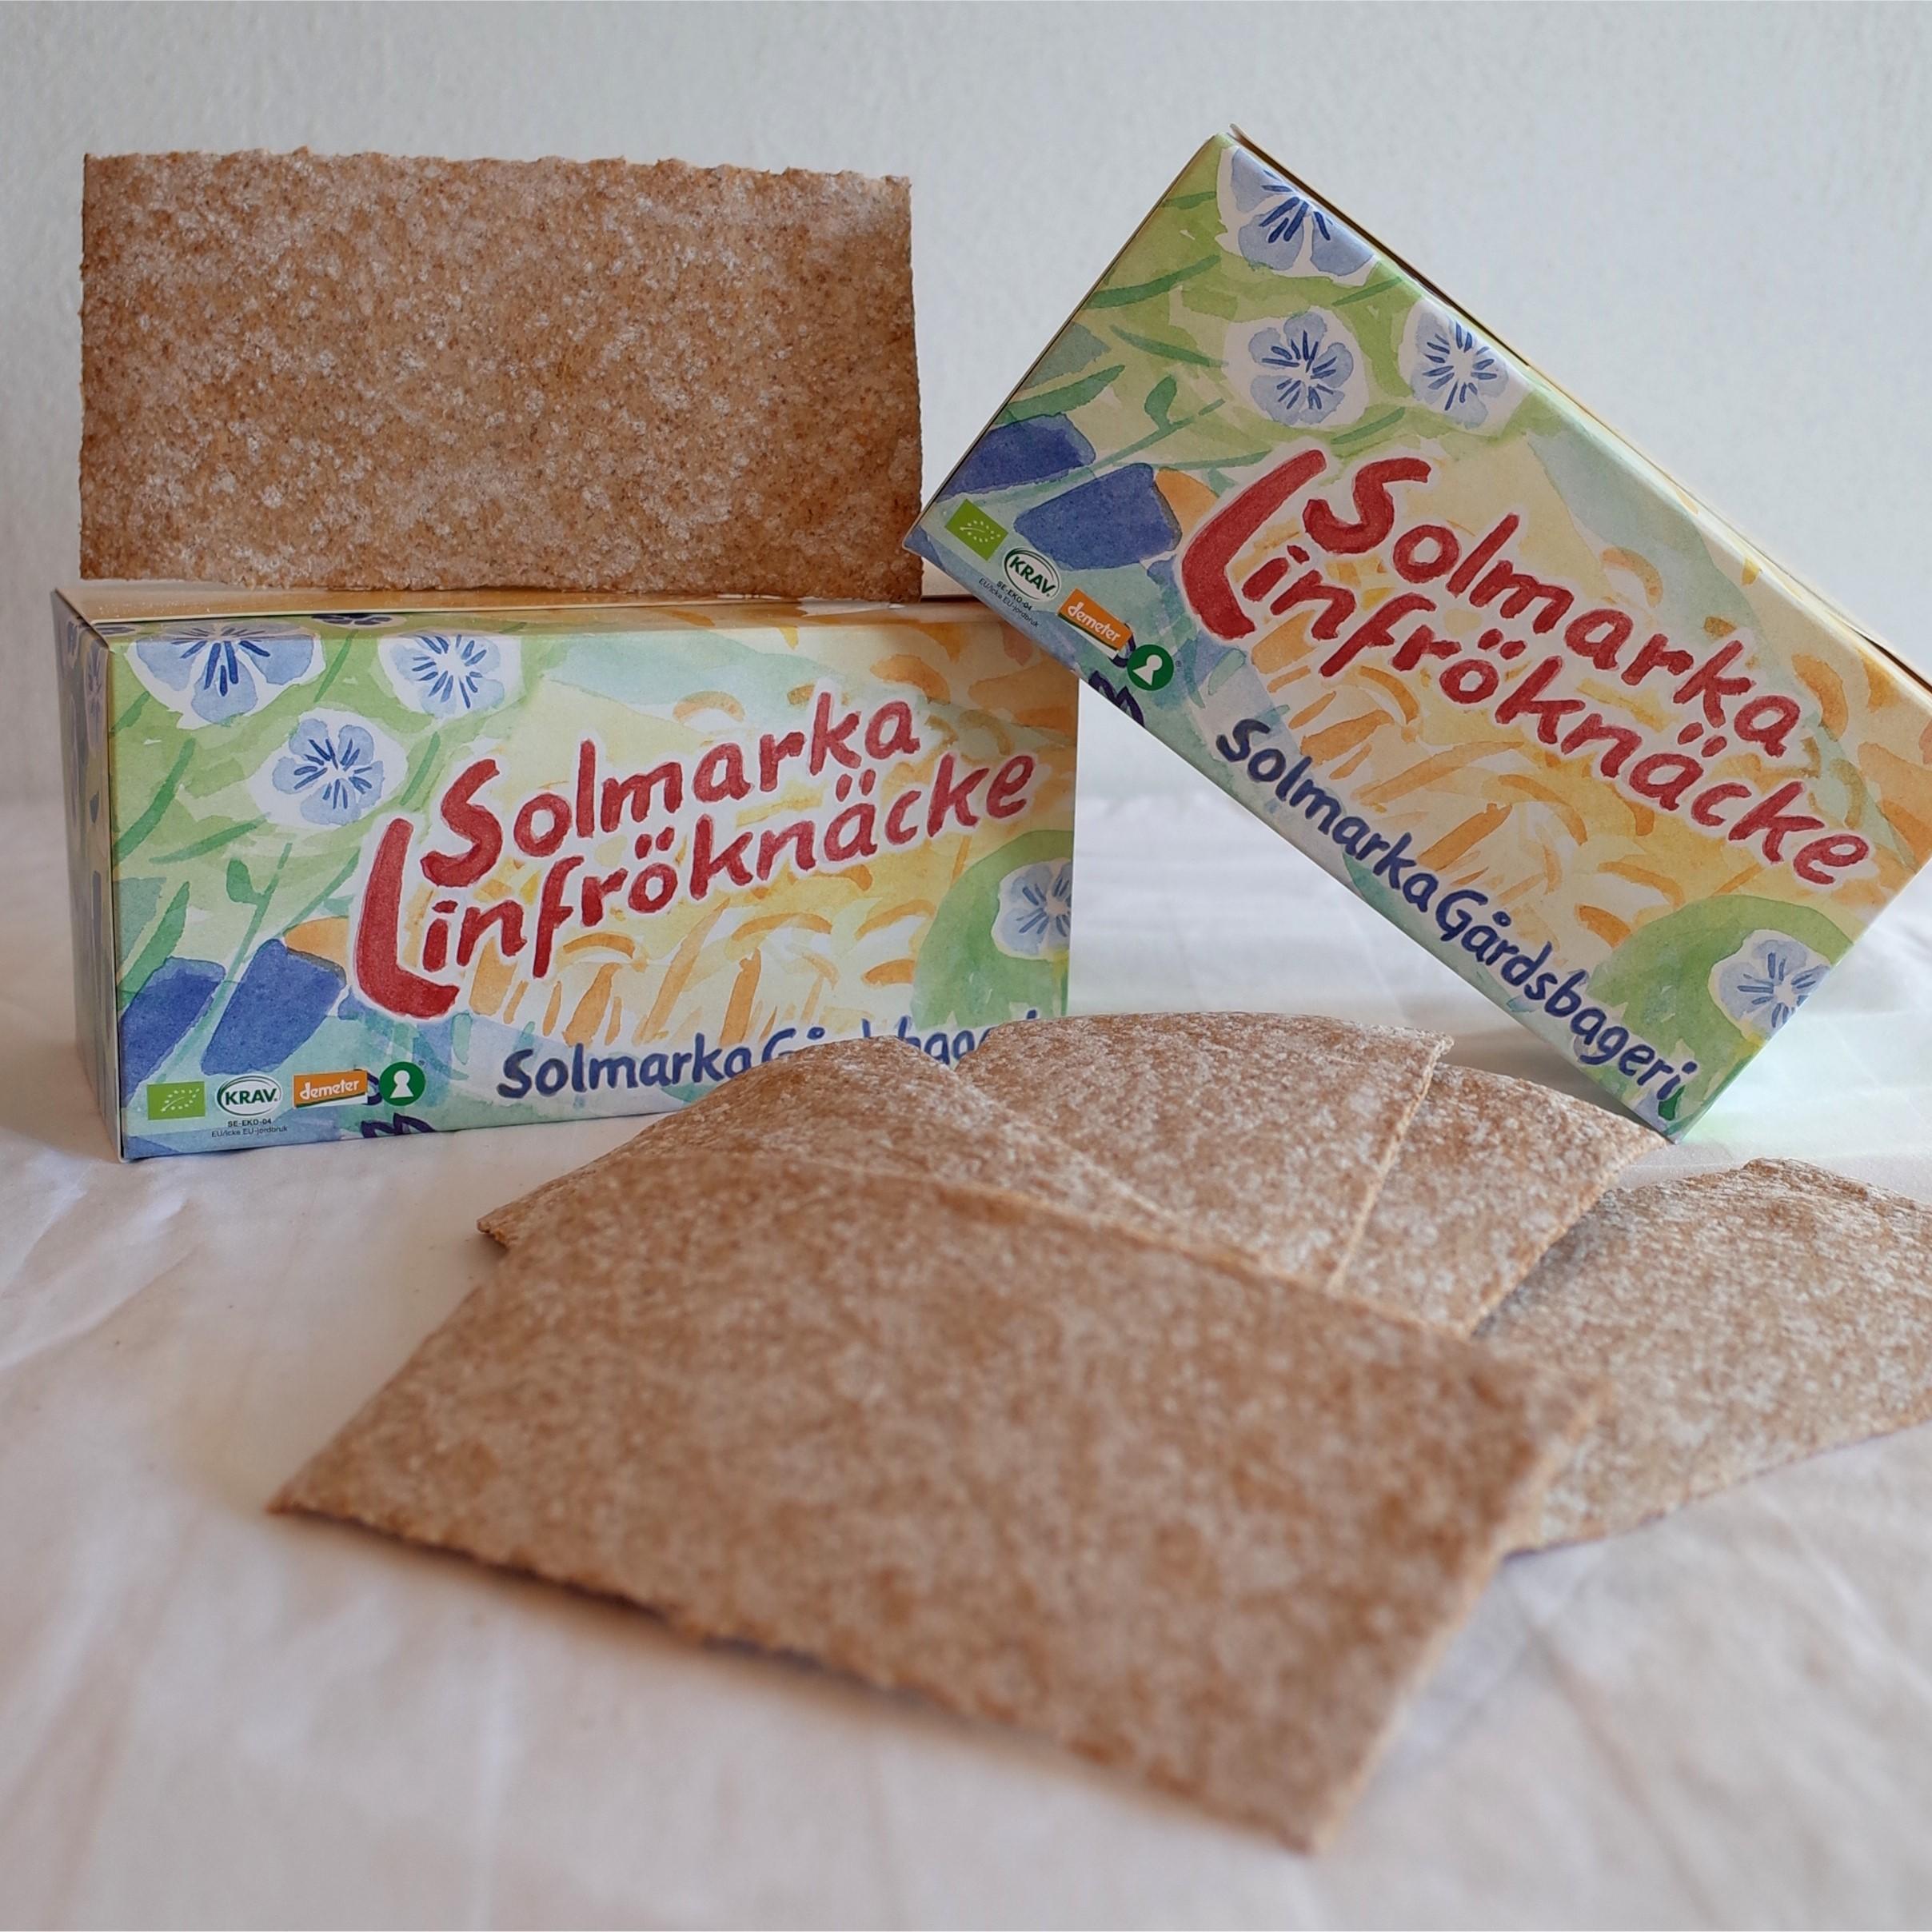 Solmarka Gårdsbageri's Flaxseed Bread '